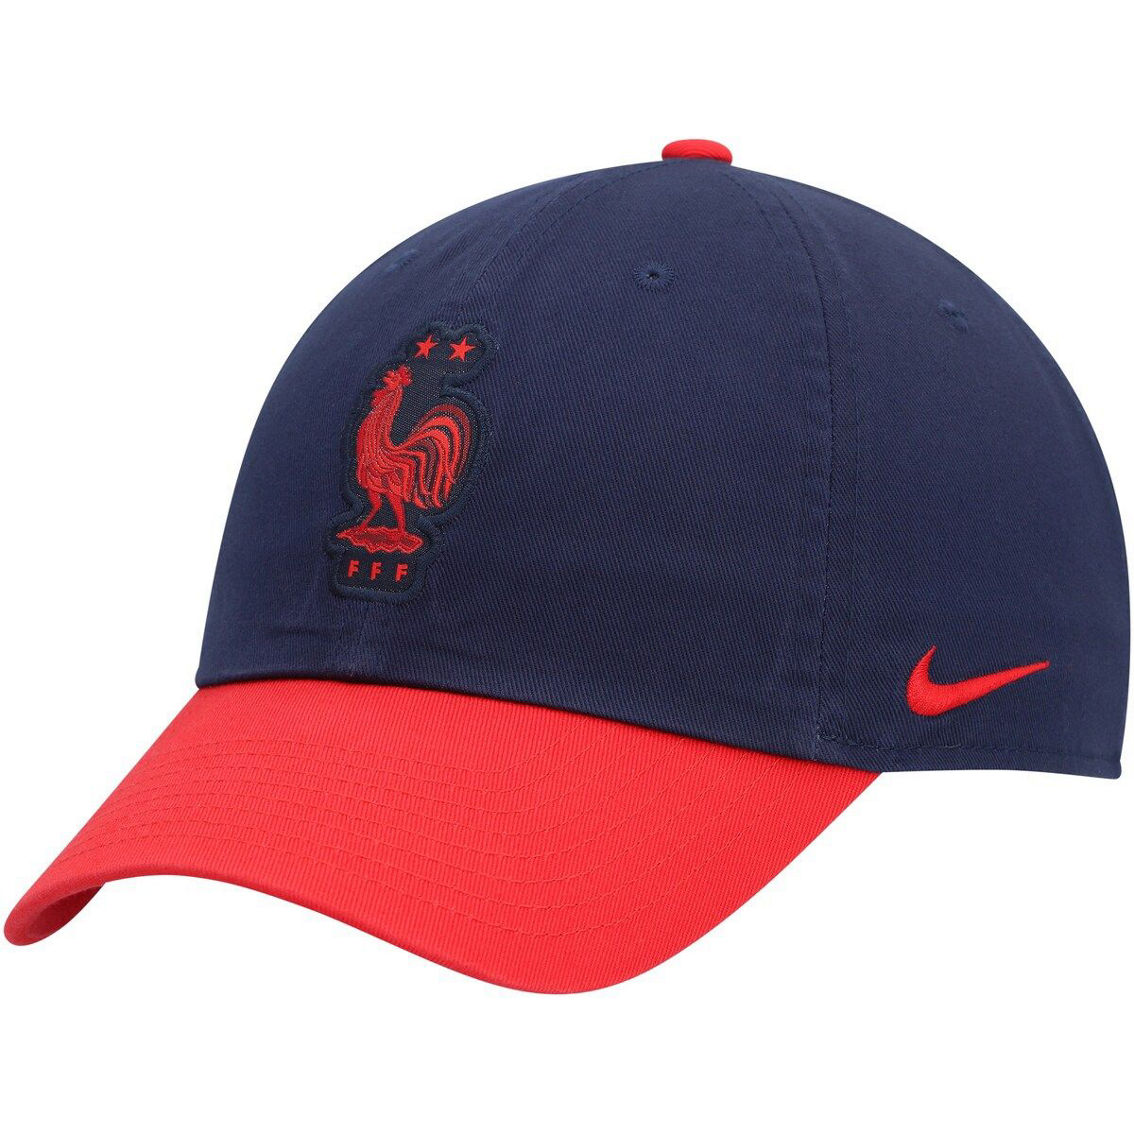 Nike Men's Navy/Red France National Team Campus Adjustable Hat - Image 2 of 4